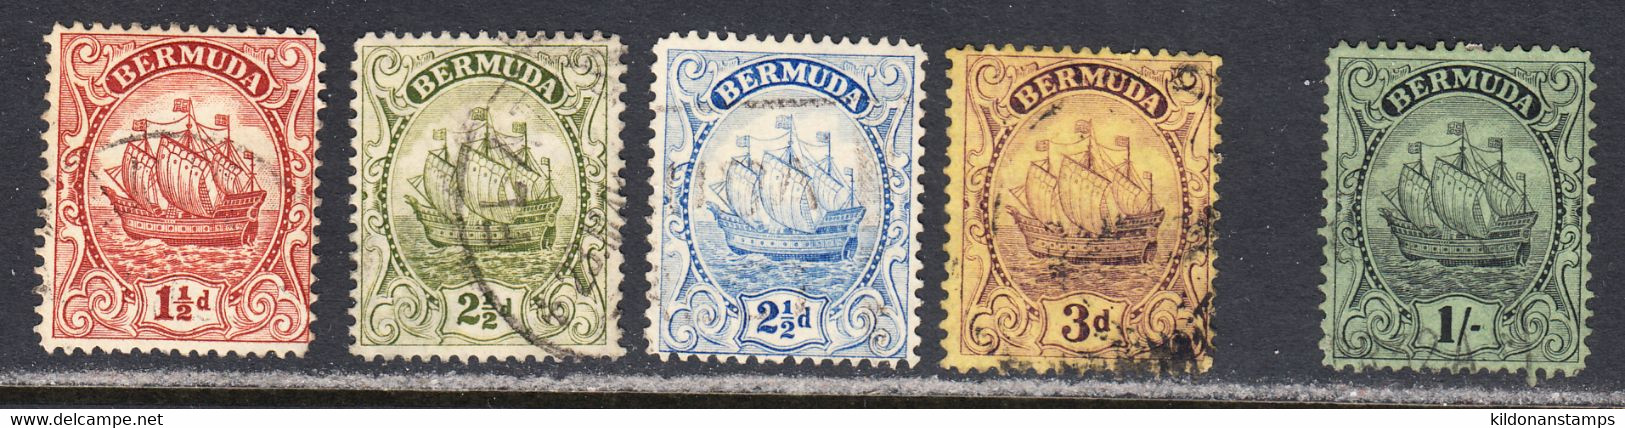 Bermuda 1922-34 Cancelled, Wmk Multi Script CA, See Notes, SG 79b,81,82,84,87 - Bermudes